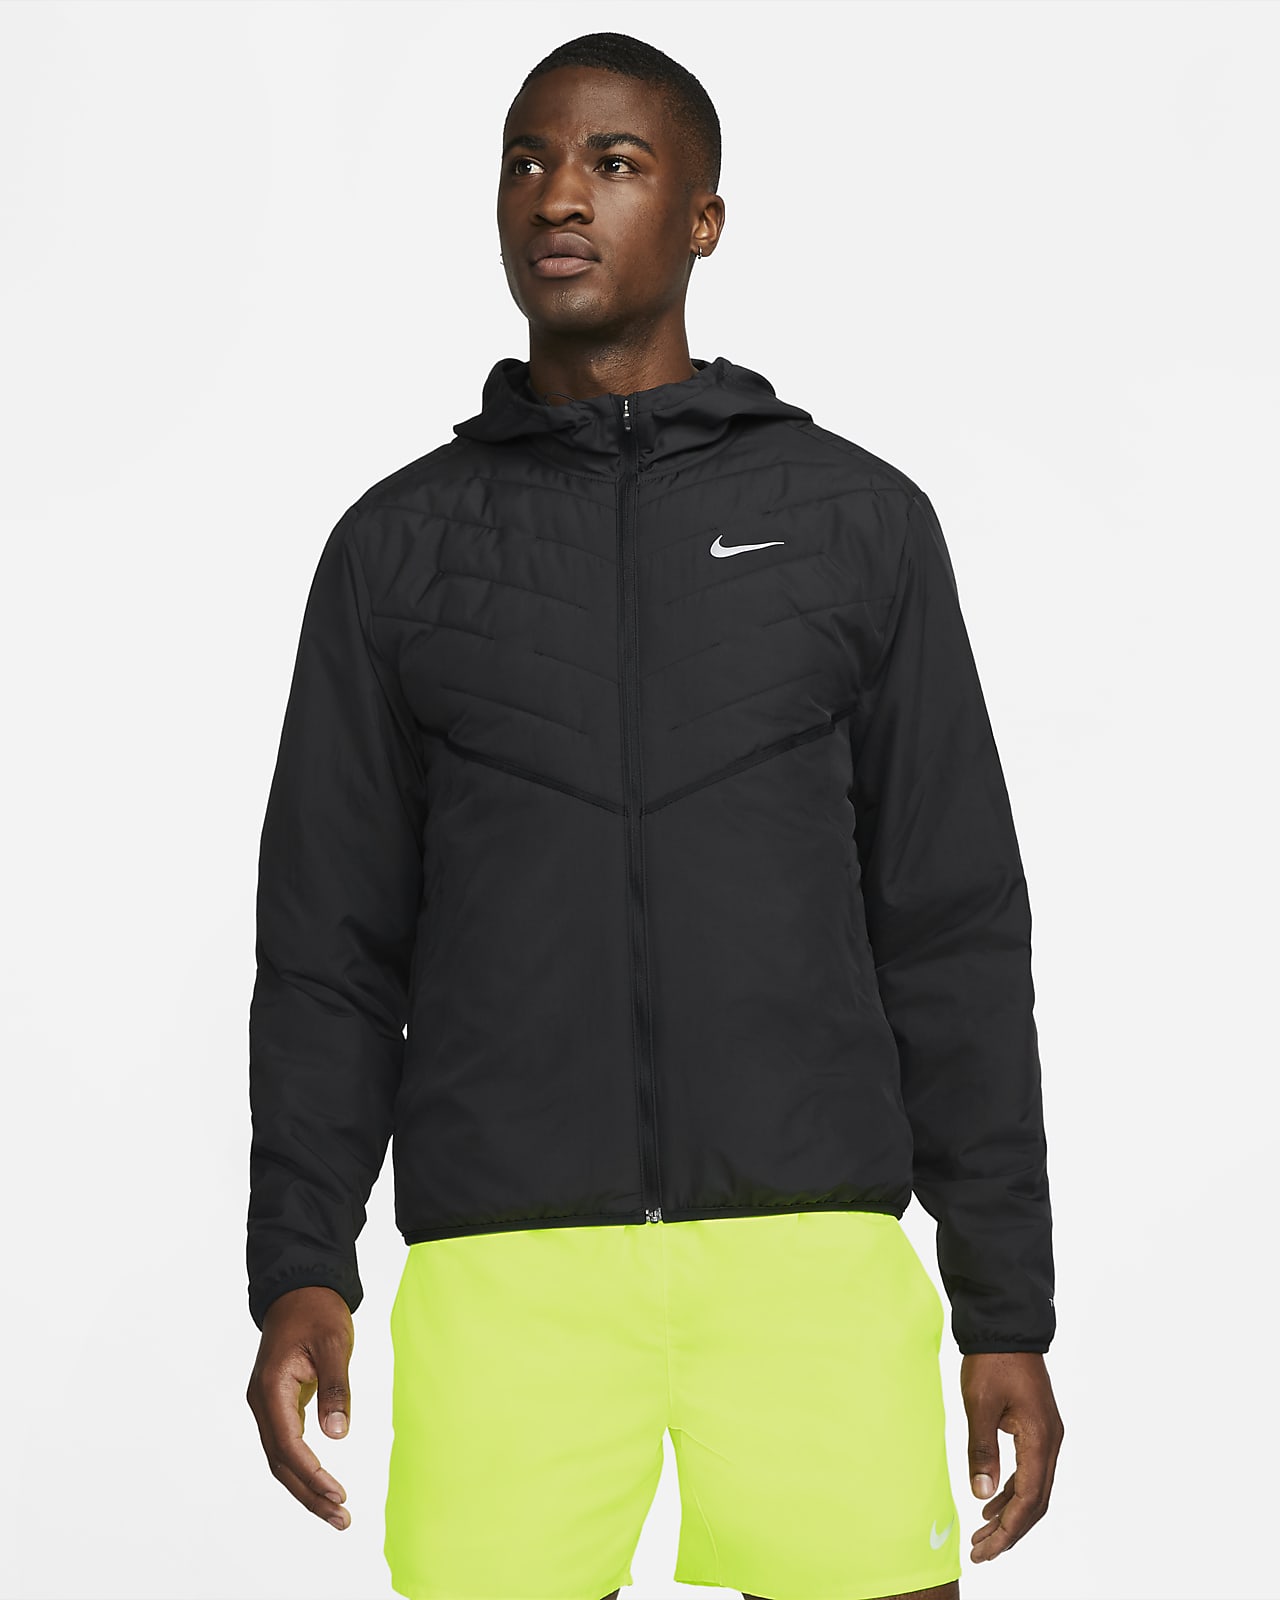 Мужская беговая куртка с синтетическим наполнителем Nike Therma-FIT Repel